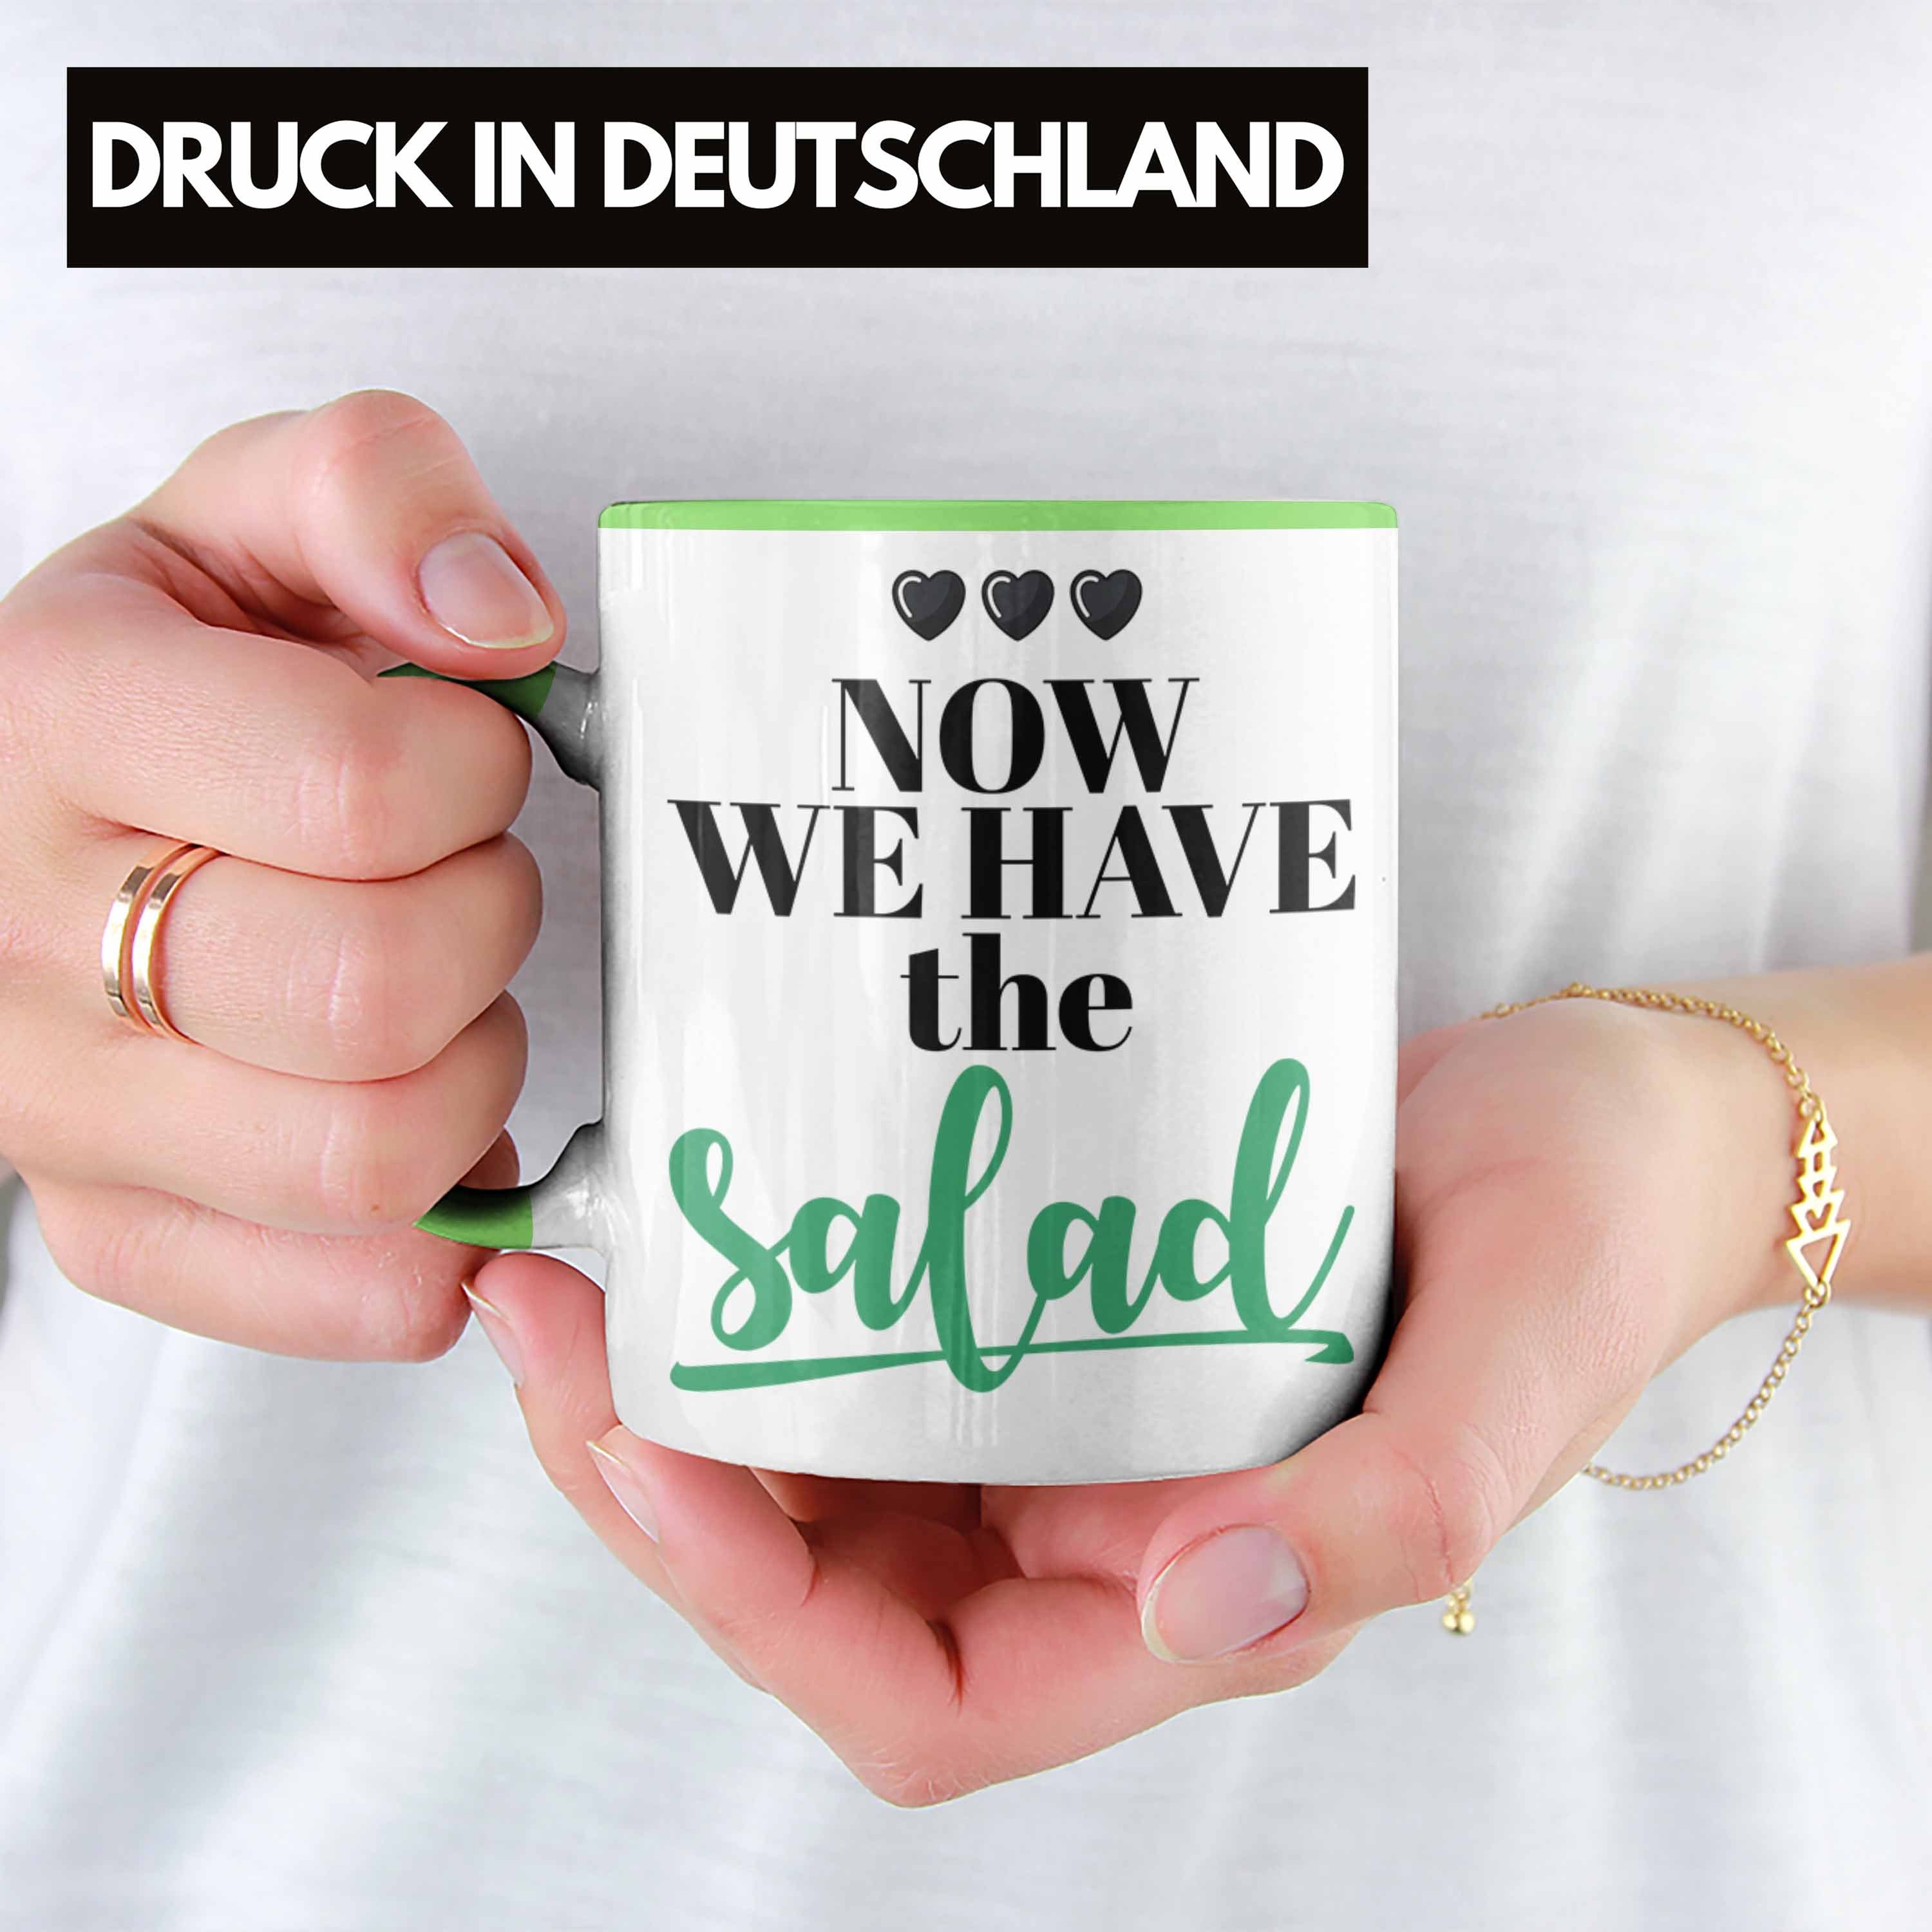 Trendation Tasse Have The Lustige Deutsch Now Salad Tasse We Geschenk Grün Englisch Wortwitz